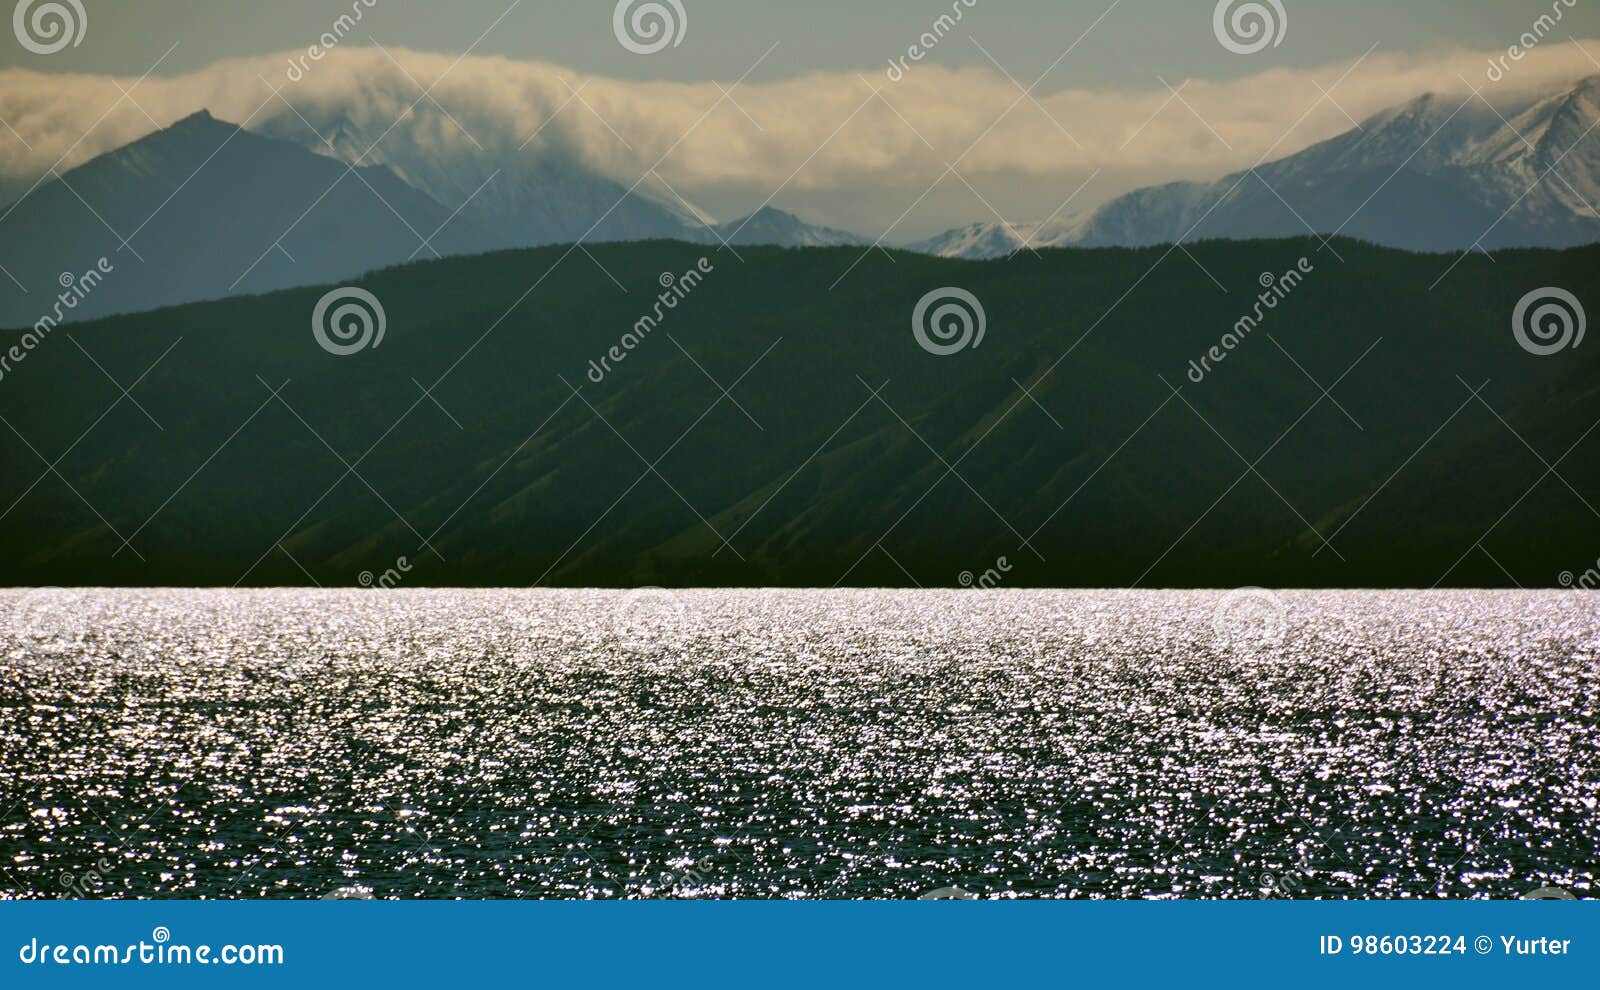 La Mongolie la soirée sur le rivage de l'horizon argenté d'étincelles de Hovsgol de lac, montagnes de Sayan la première neige pen. La Mongolie, pour voir le soir sur le rivage du nord du lac Hovsgol, l'argent de scintillement de l'eau, l'horizon, la première neige le 12 août 2017 Sayan, horizontalement